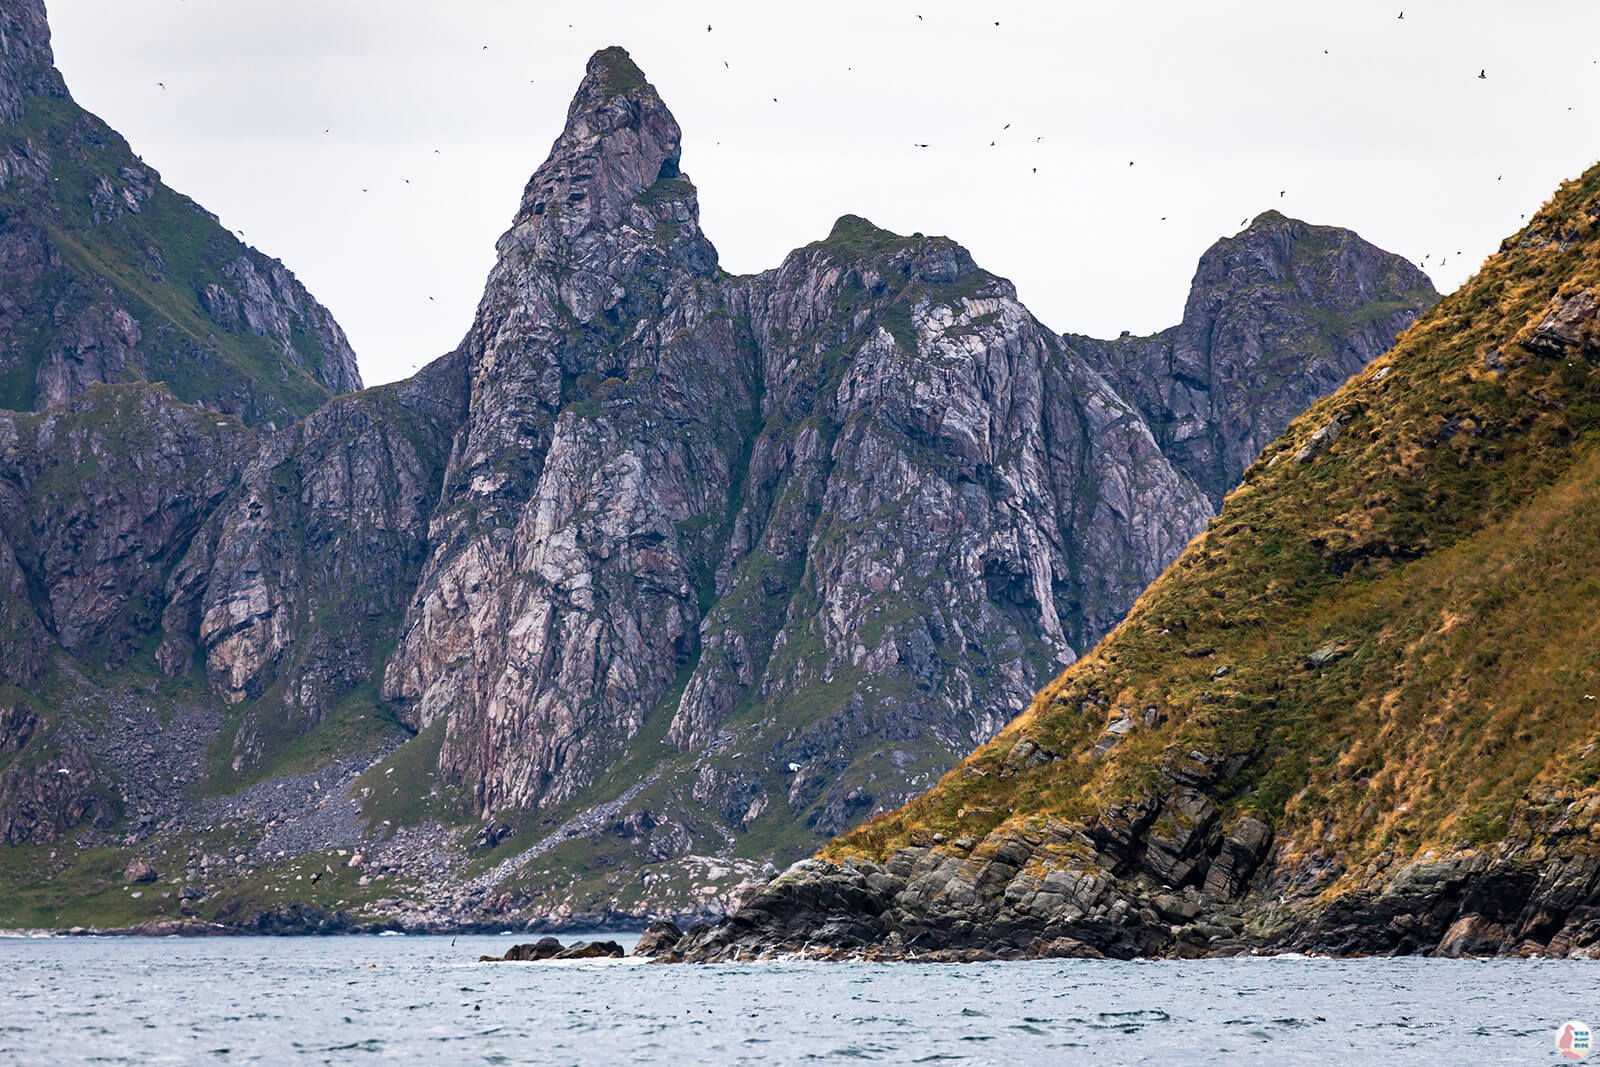 Bleiksøya and Stave cliffs around Måtinden peak, Bleik, Andøya, Northern Norway